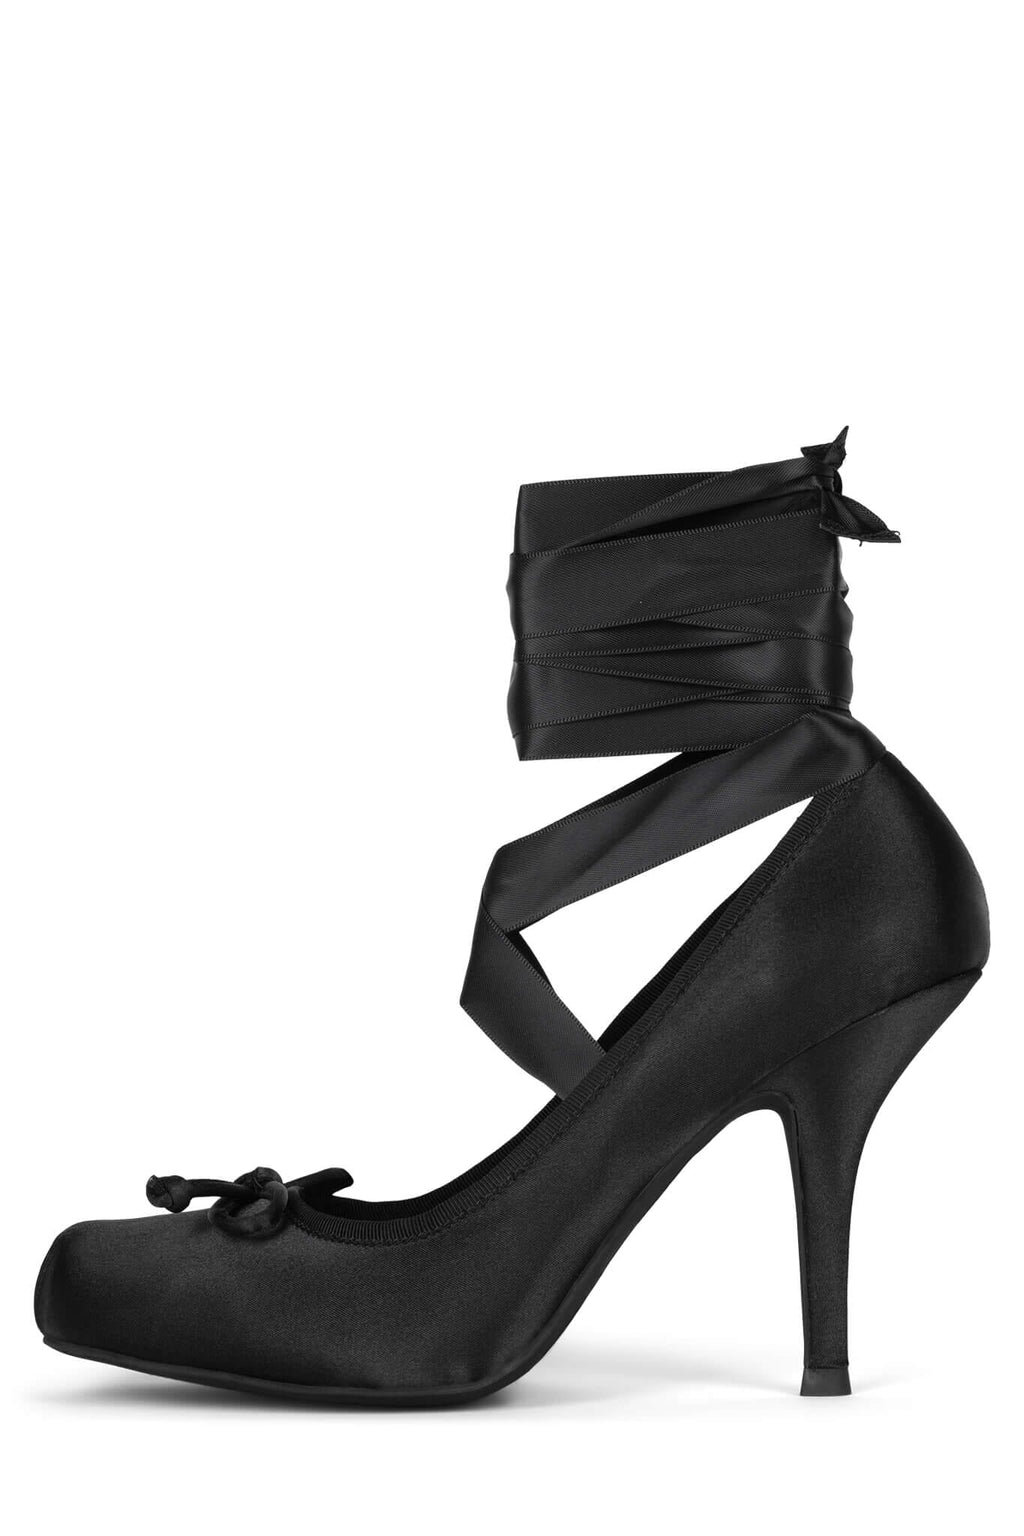 Padvesh Women Black Heels - Buy Padvesh Women Black Heels Online at Best  Price - Shop Online for Footwears in India | Flipkart.com